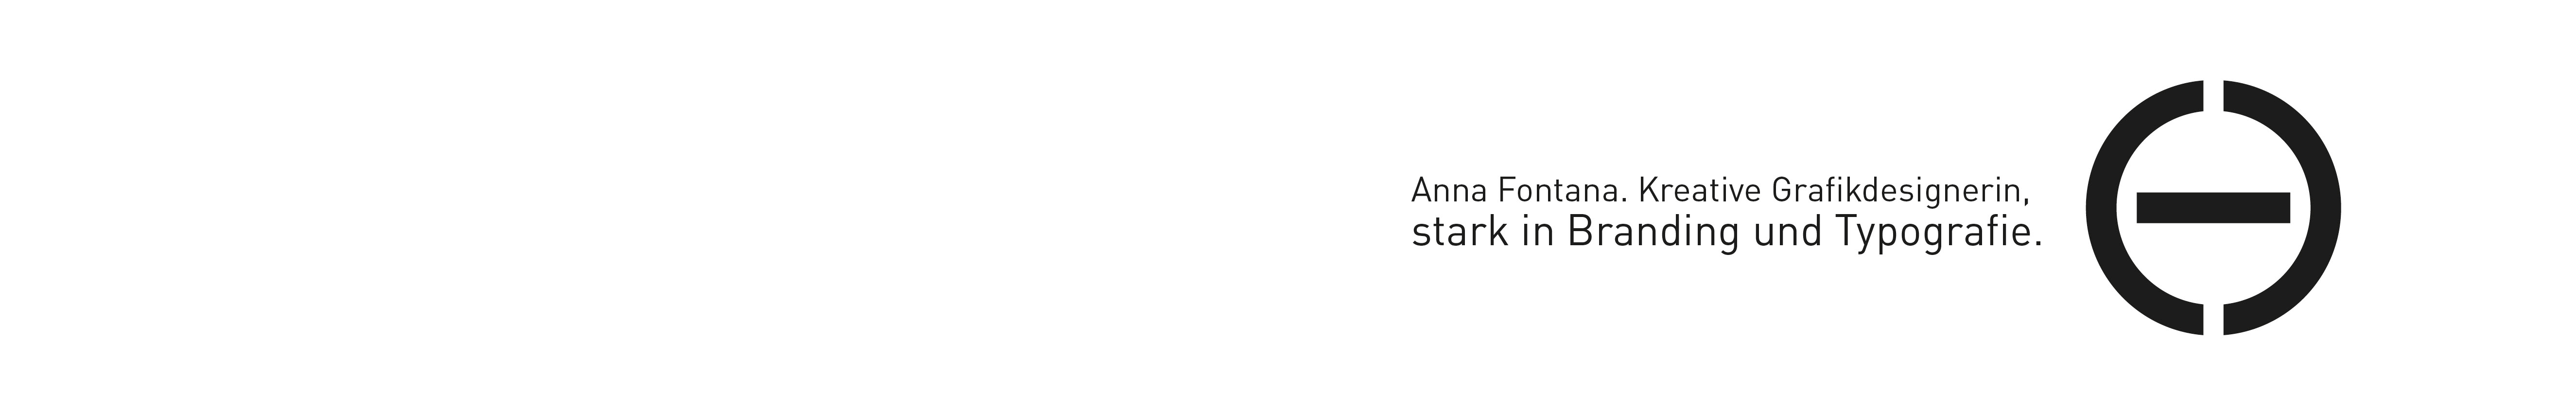 Profilbanneret til Anna Fontana